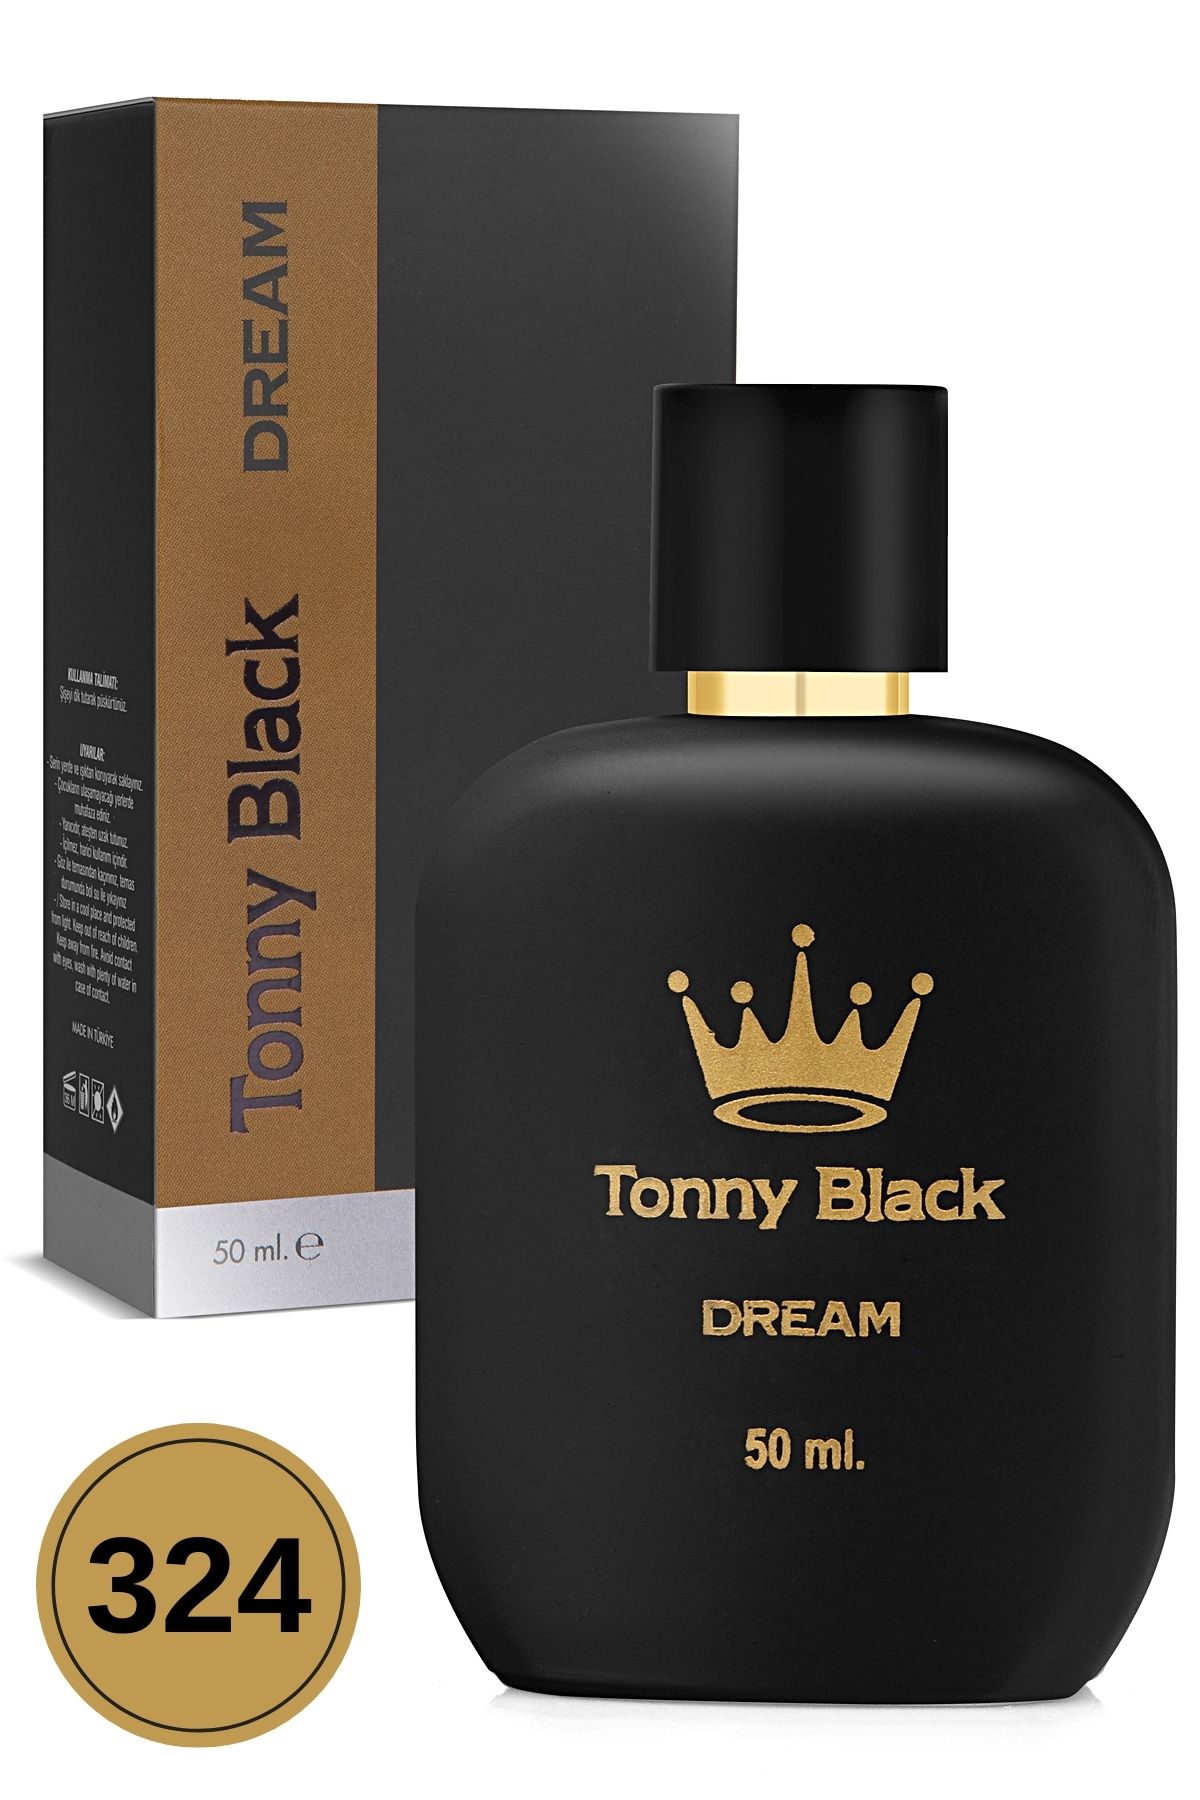 Tonny Black Orijinal Kadın 324 Özel Seri Uzun Süre Kalıcı Etkili Dream Özel Serisi Lüks Kadın Parfüm 50ml